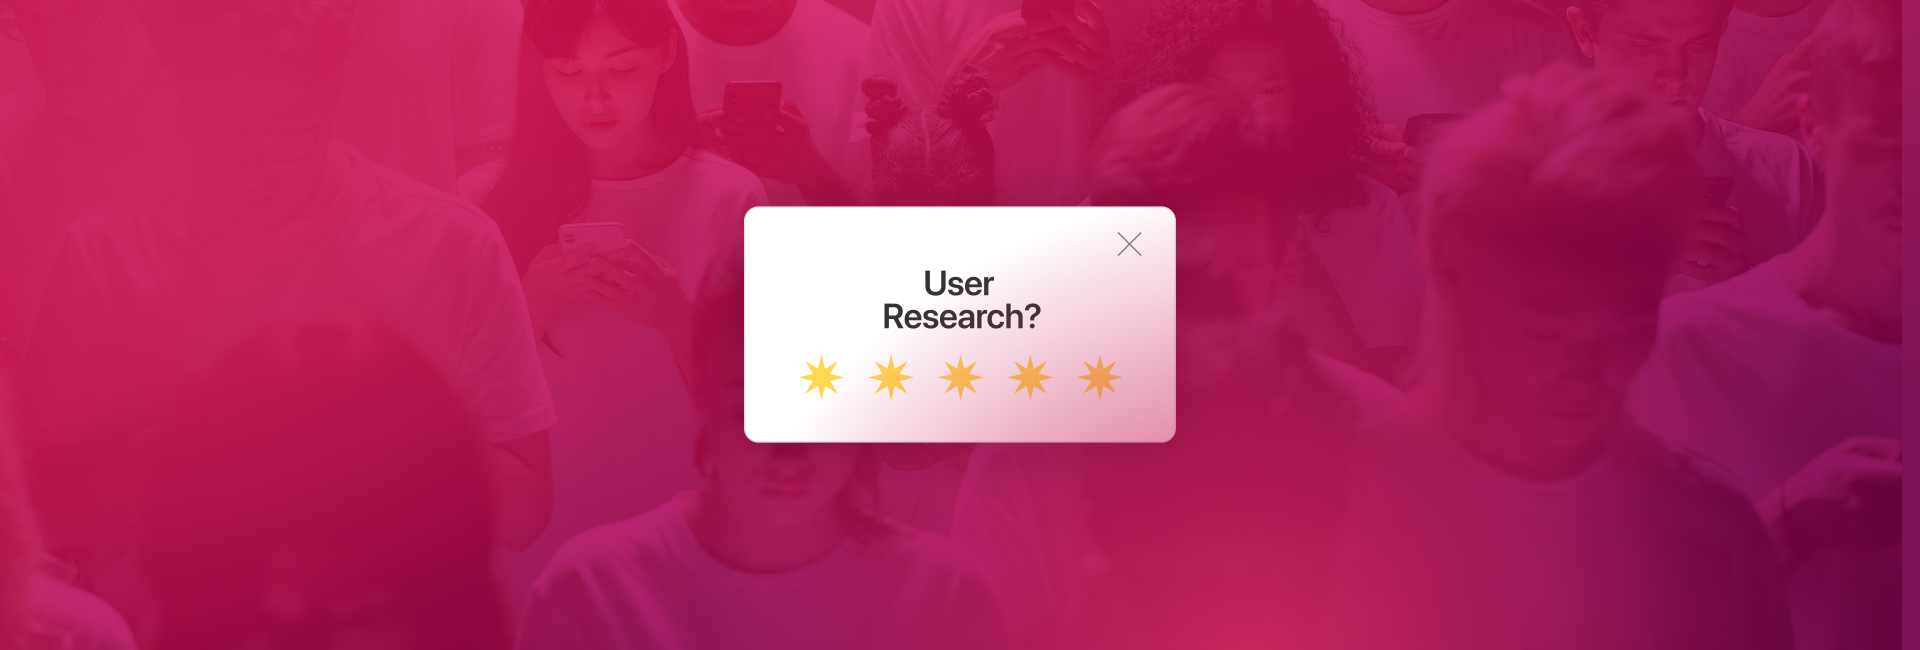 Nghiên cứu người dùng có đang được đánh giá quá cao?